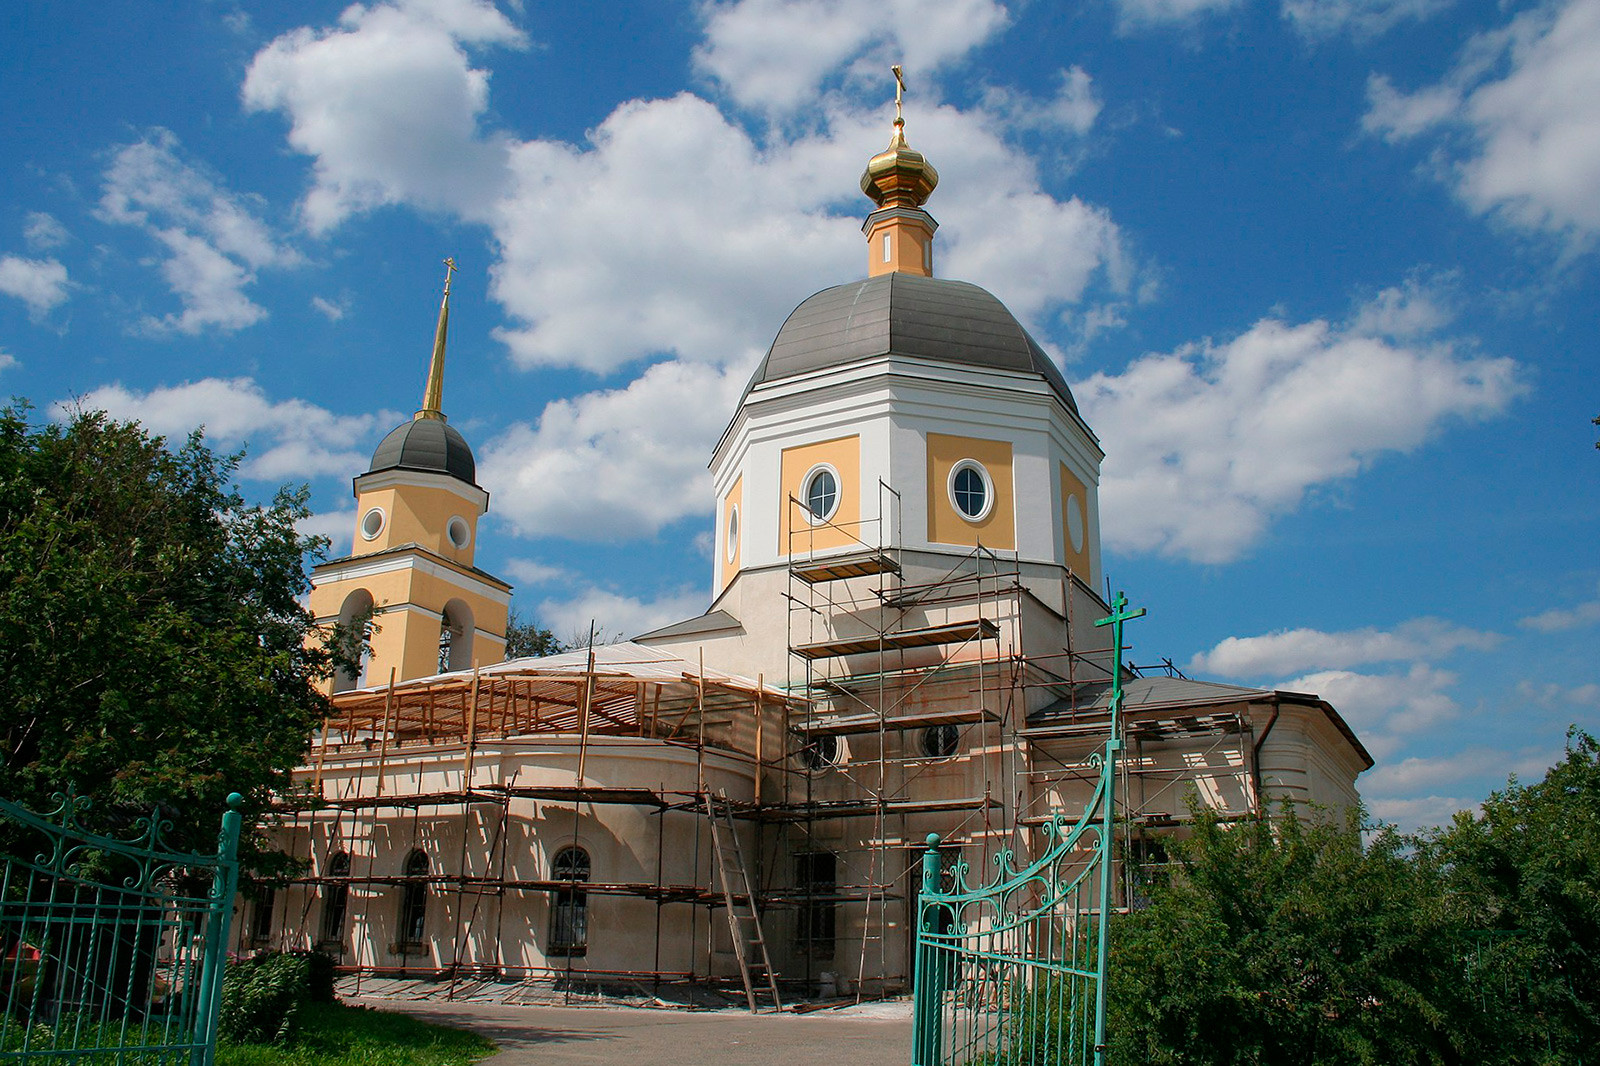 Crkva Rođenja Kristovog u Čerkizovu

